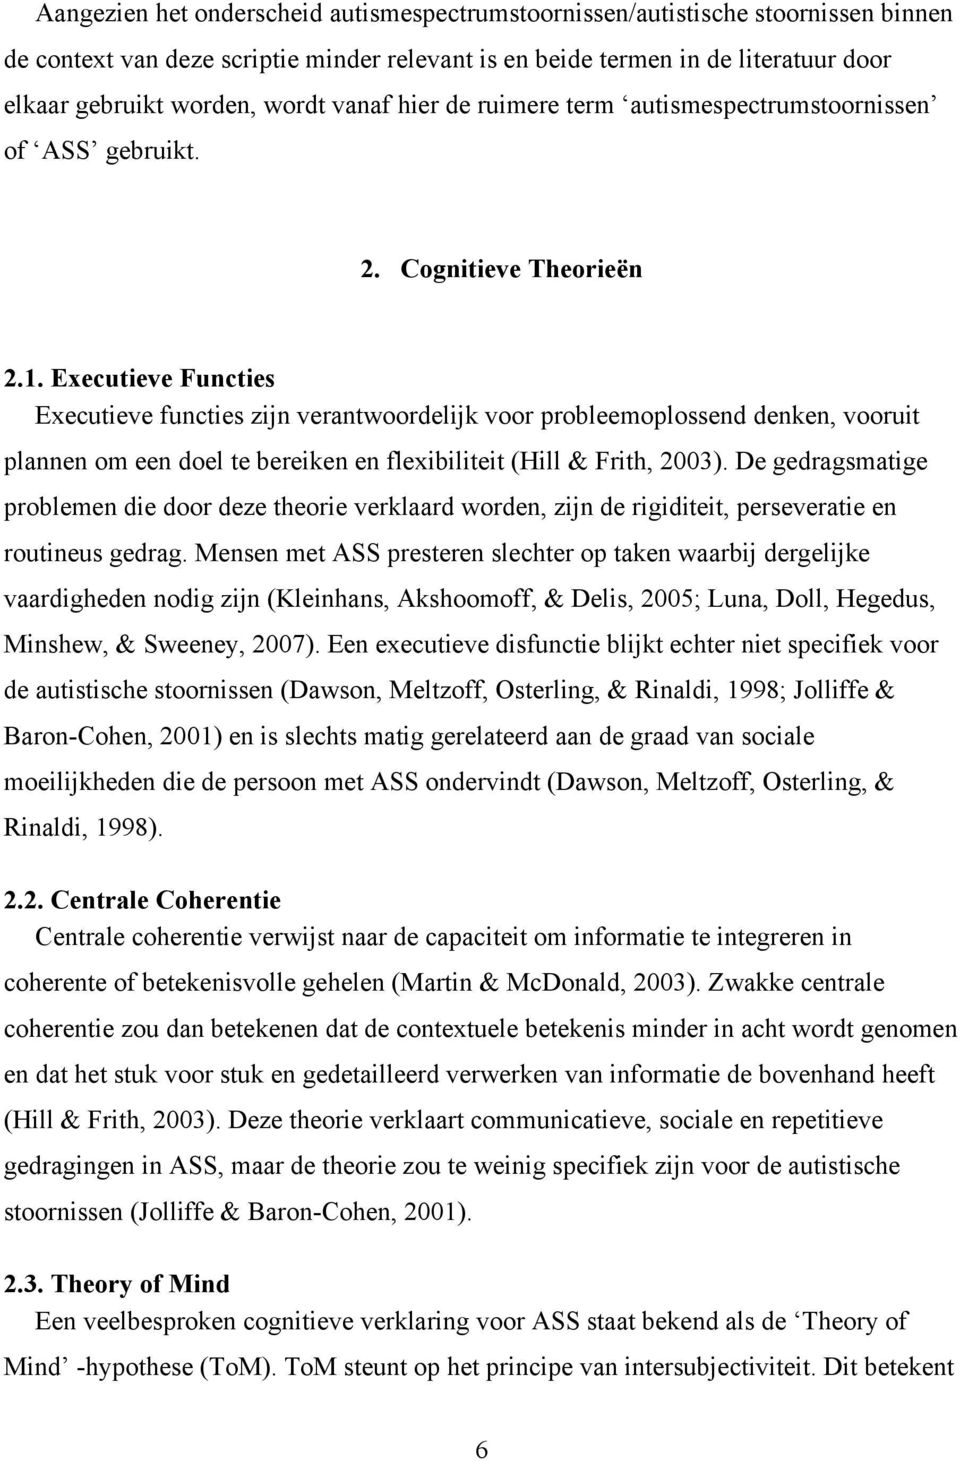 Executieve Functies Executieve functies zijn verantwoordelijk voor probleemoplossend denken, vooruit plannen om een doel te bereiken en flexibiliteit (Hill & Frith, 2003).